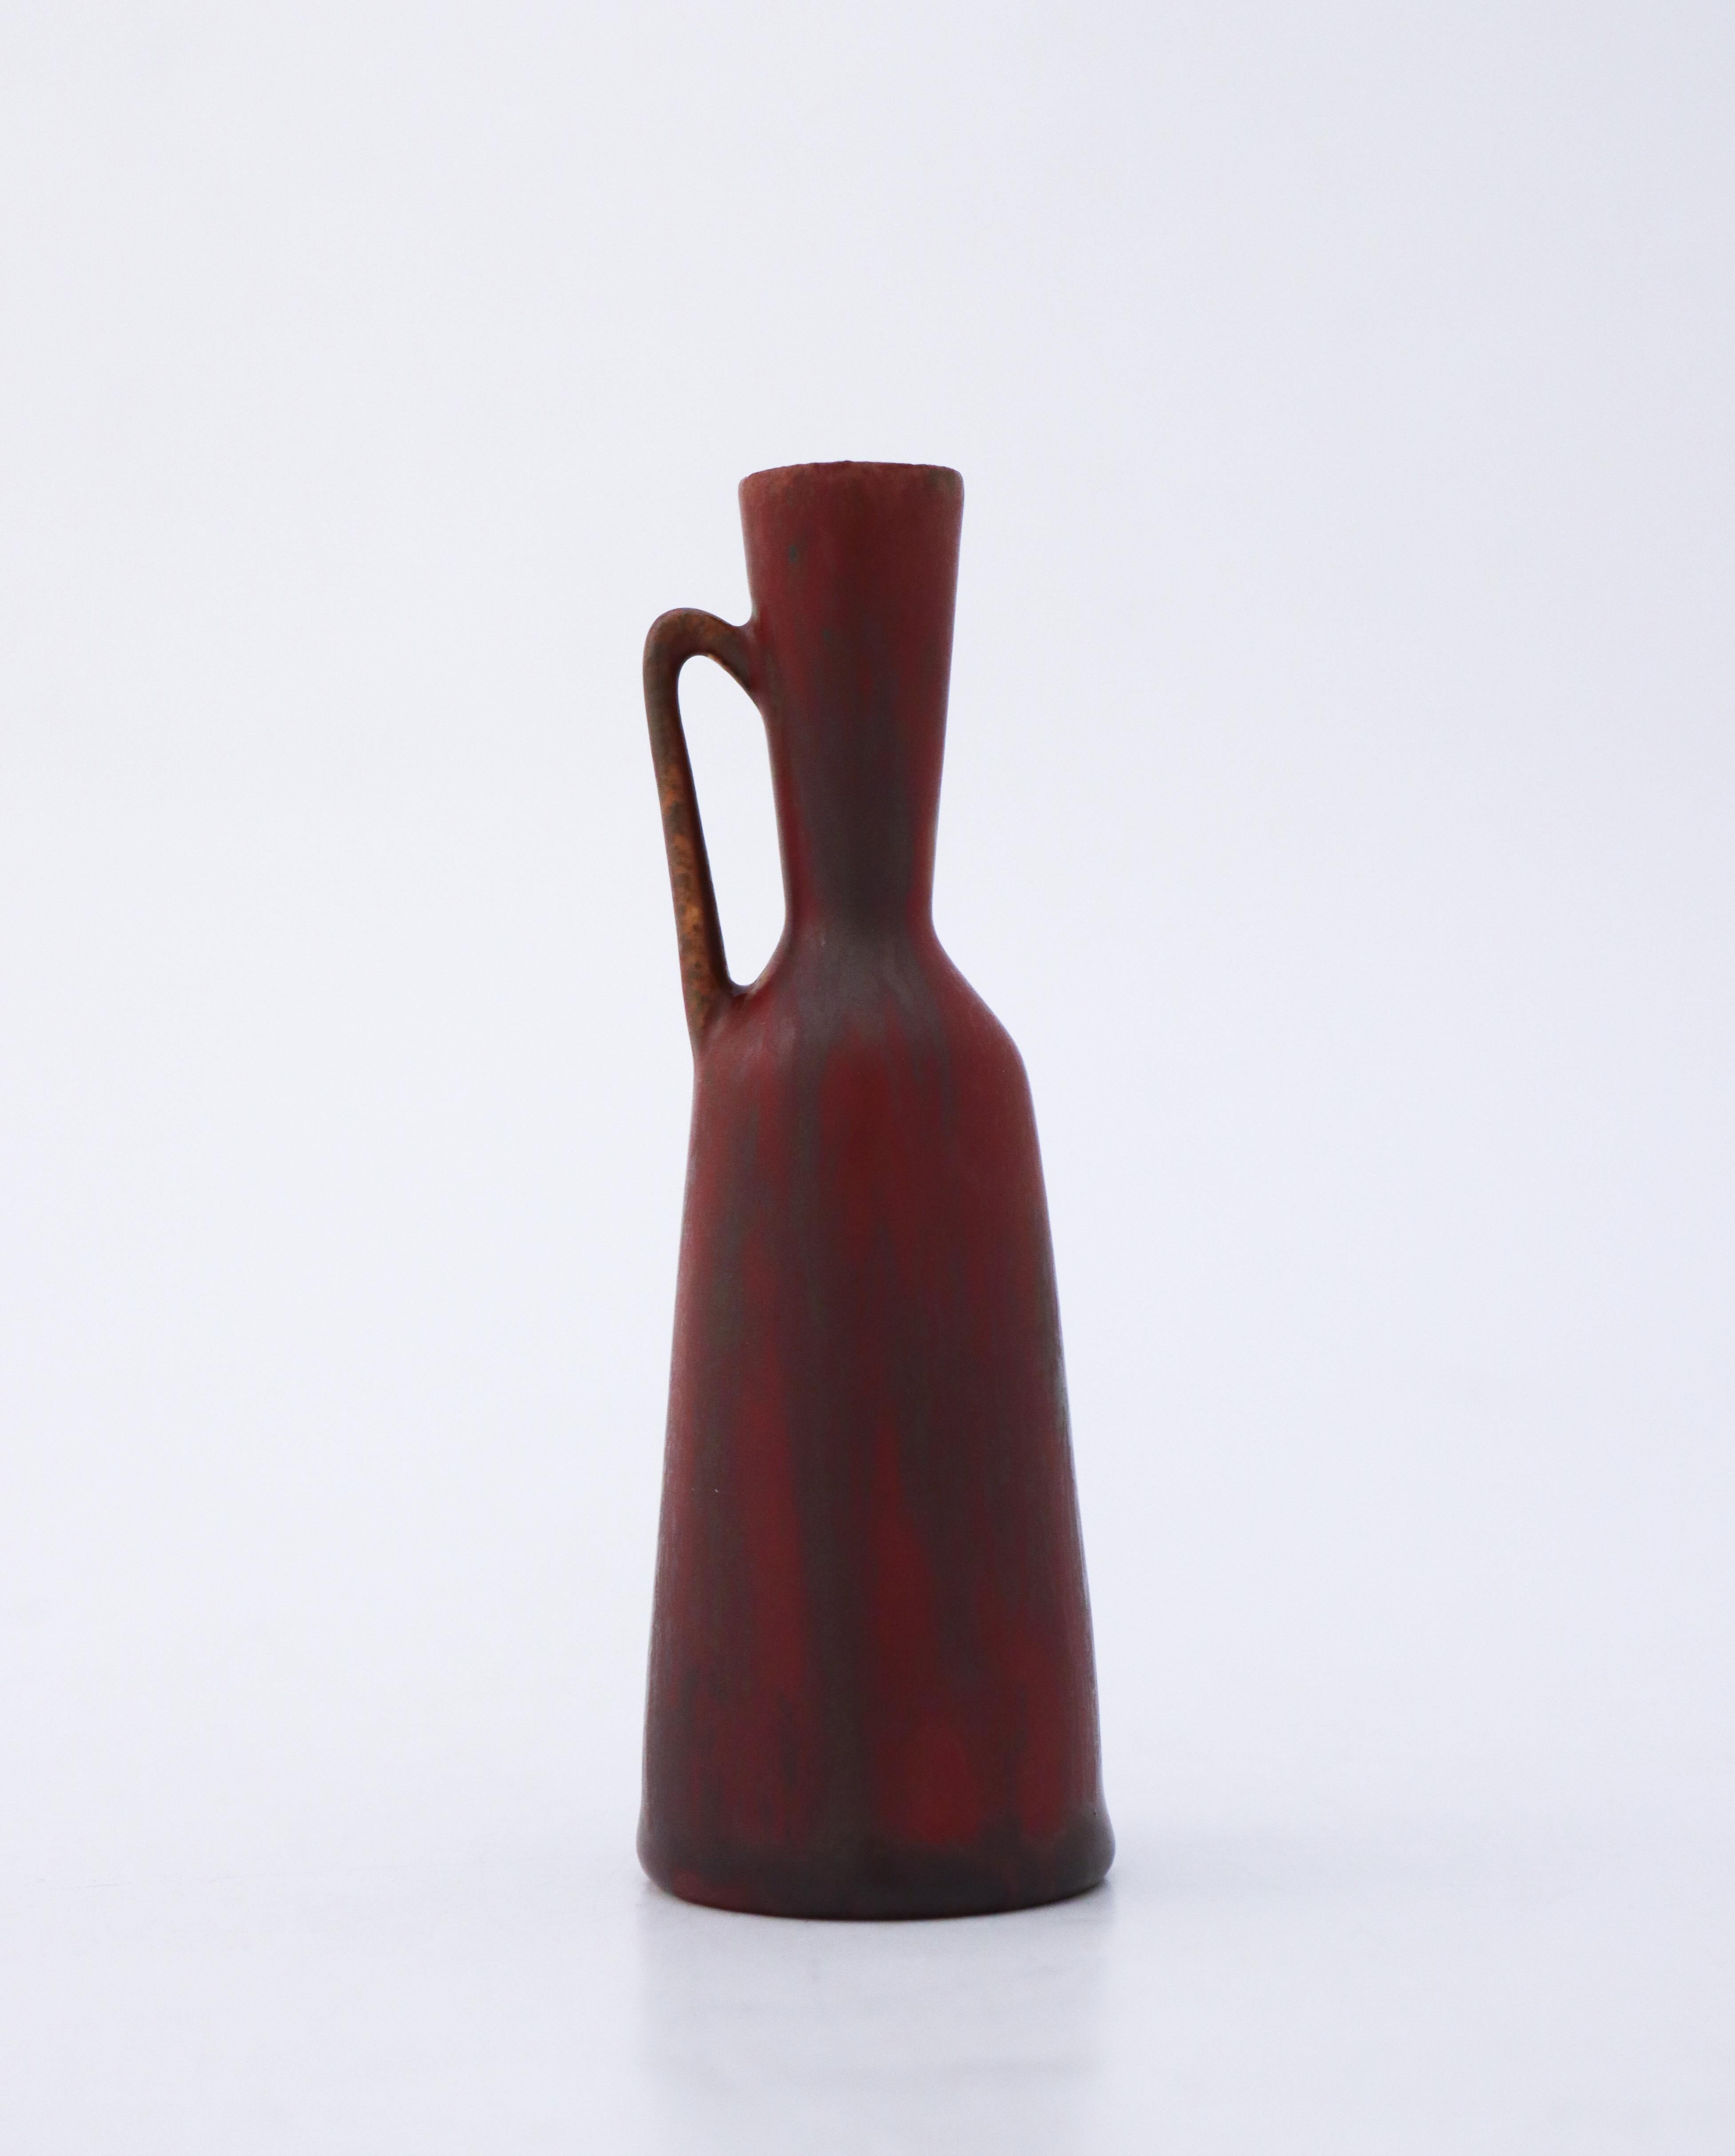 Vase brun/rouge bordeaux conçu par Carl-Harry Stålhane chez Rörstrand, d'une hauteur de 12,5 cm. Il est marqué comme étant de 2ème qualité parce qu'il a une fissure mineure près de la base provenant de la production, voir les photos détaillées de